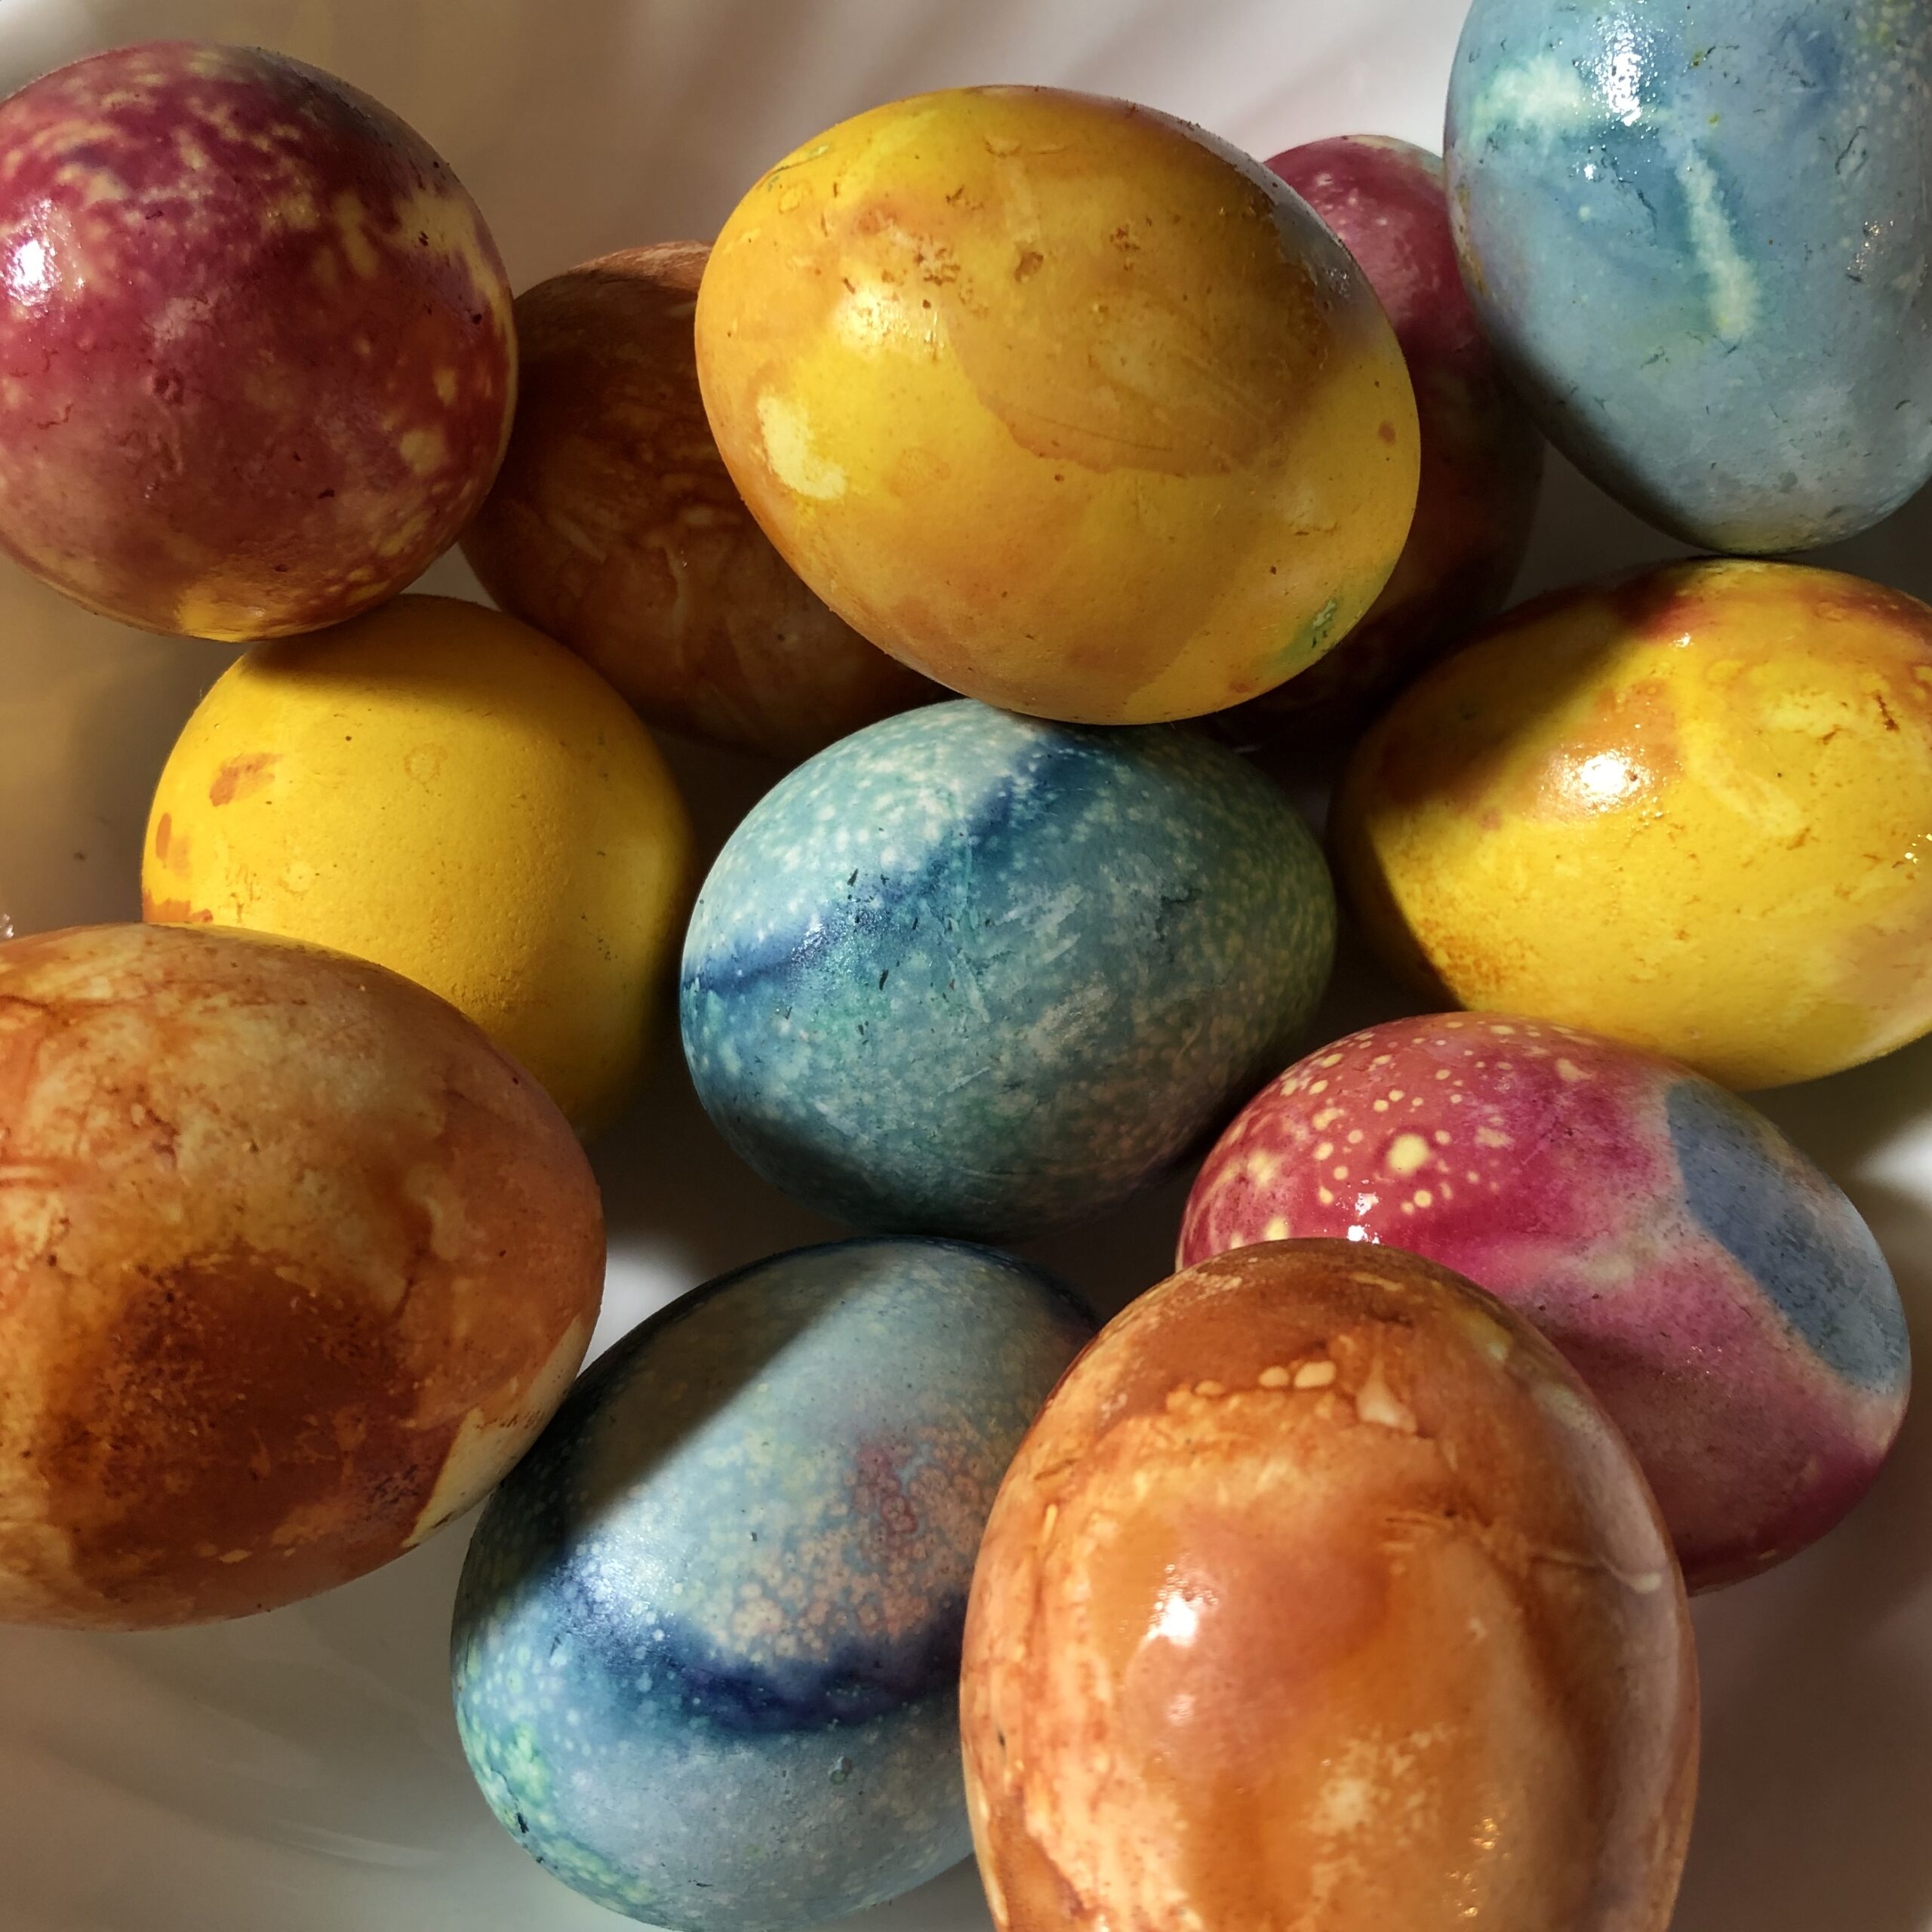 Natural Dye For Easter Eggs